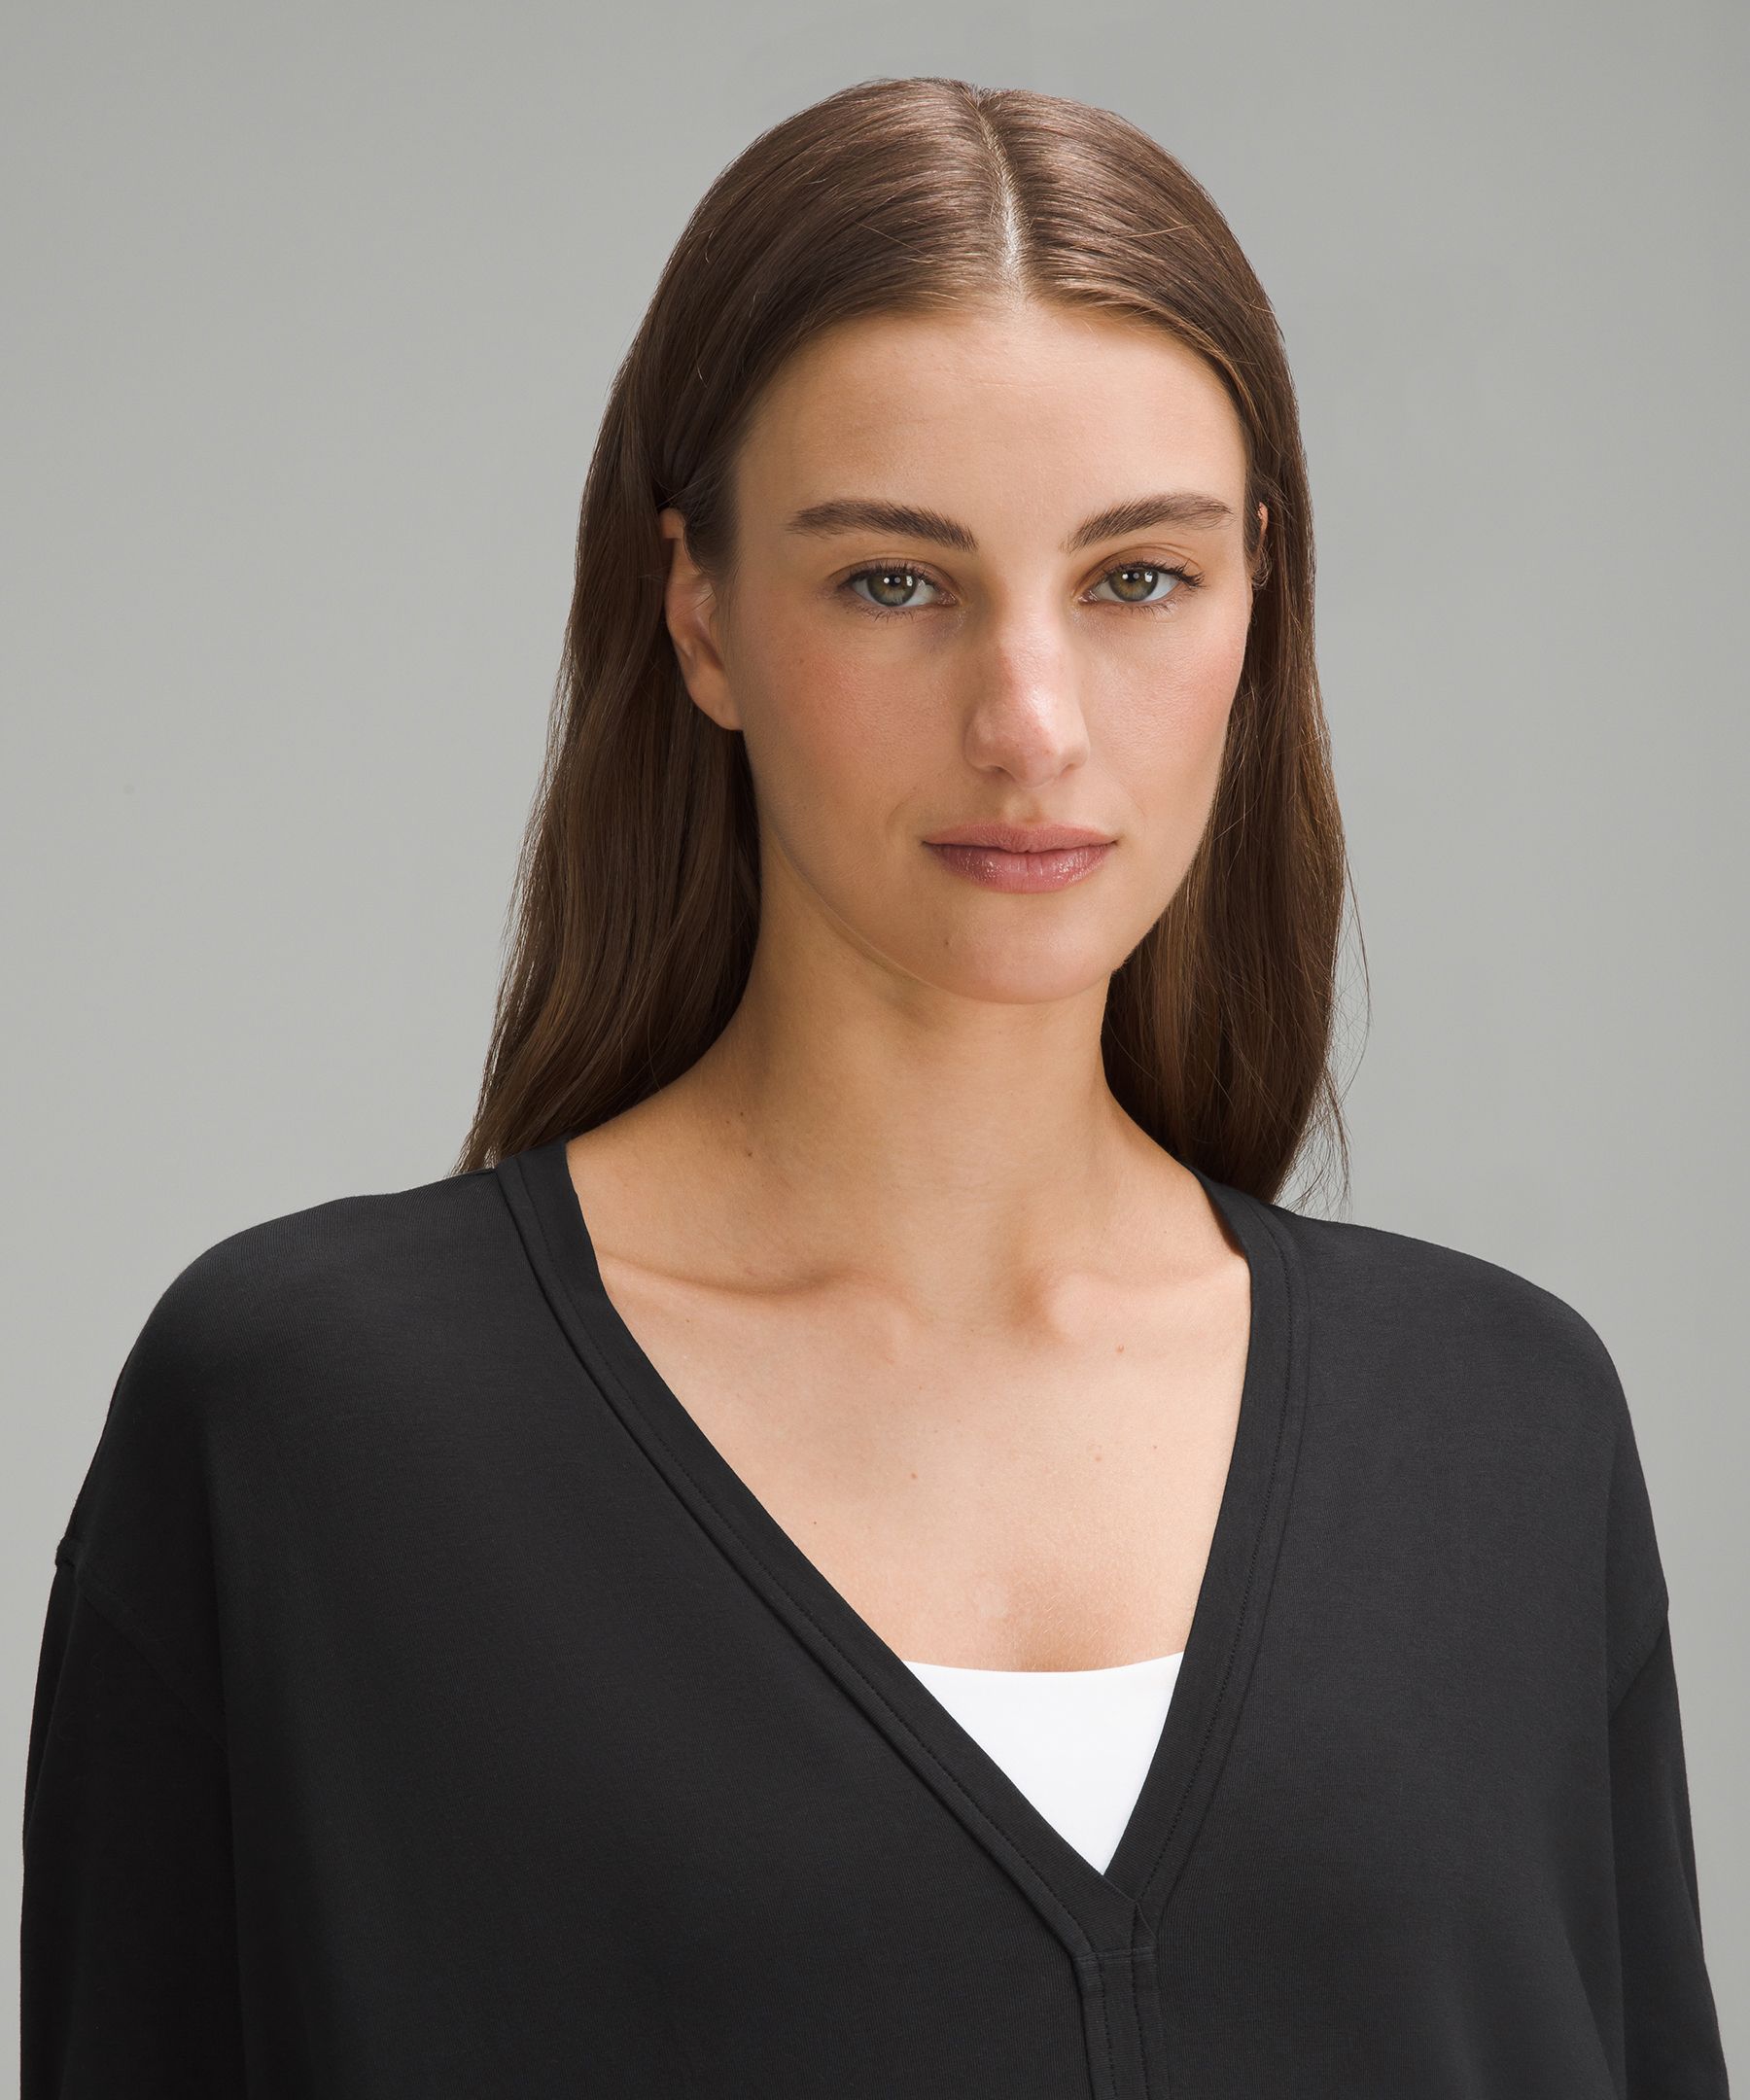 Buy Women's Long Sleeve V-Neck Tops Online